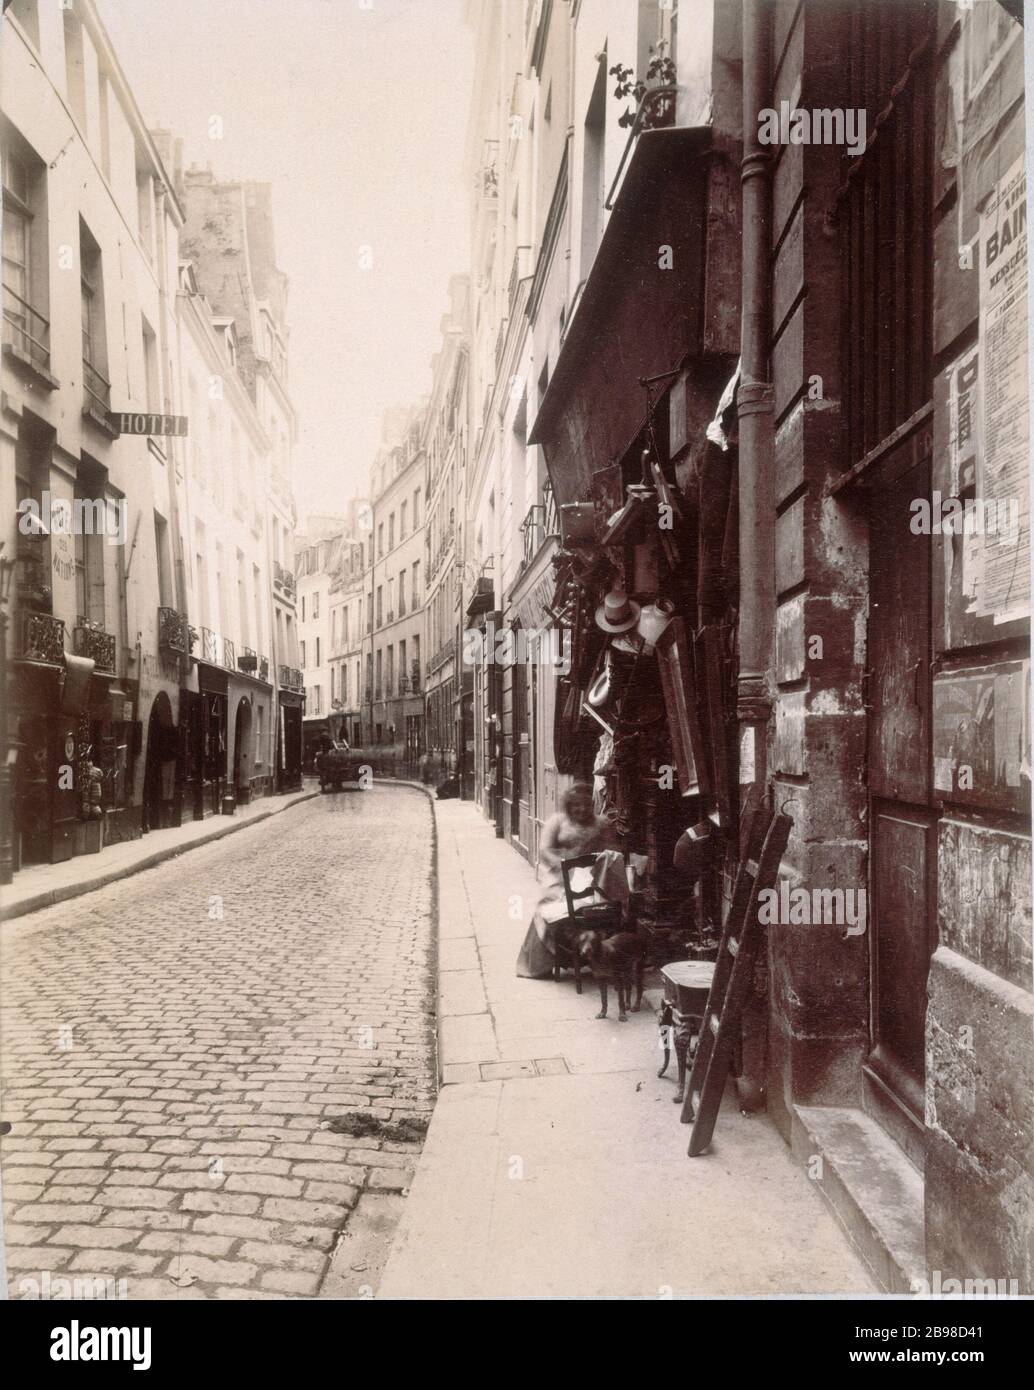 STRASSE FIGUIER Rue du Figuier. Paris (IVème-Bezirk), 1902. Photographie d'Eugène Atget (1857-1927). Paris, musée Carnavalet. Stockfoto